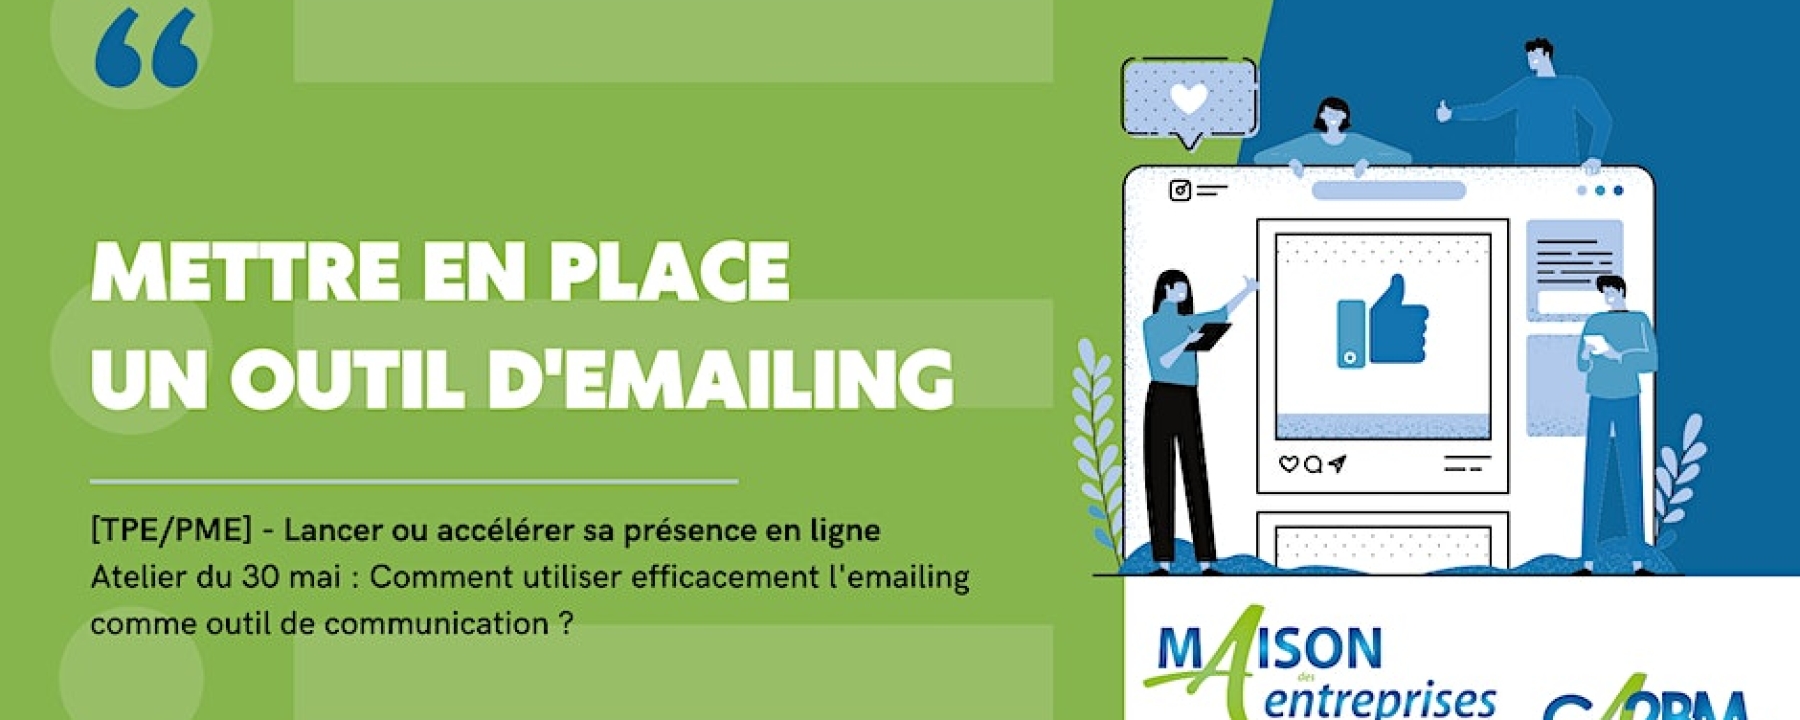 Comment utiliser efficacement l'emailing comme outil de communication ?